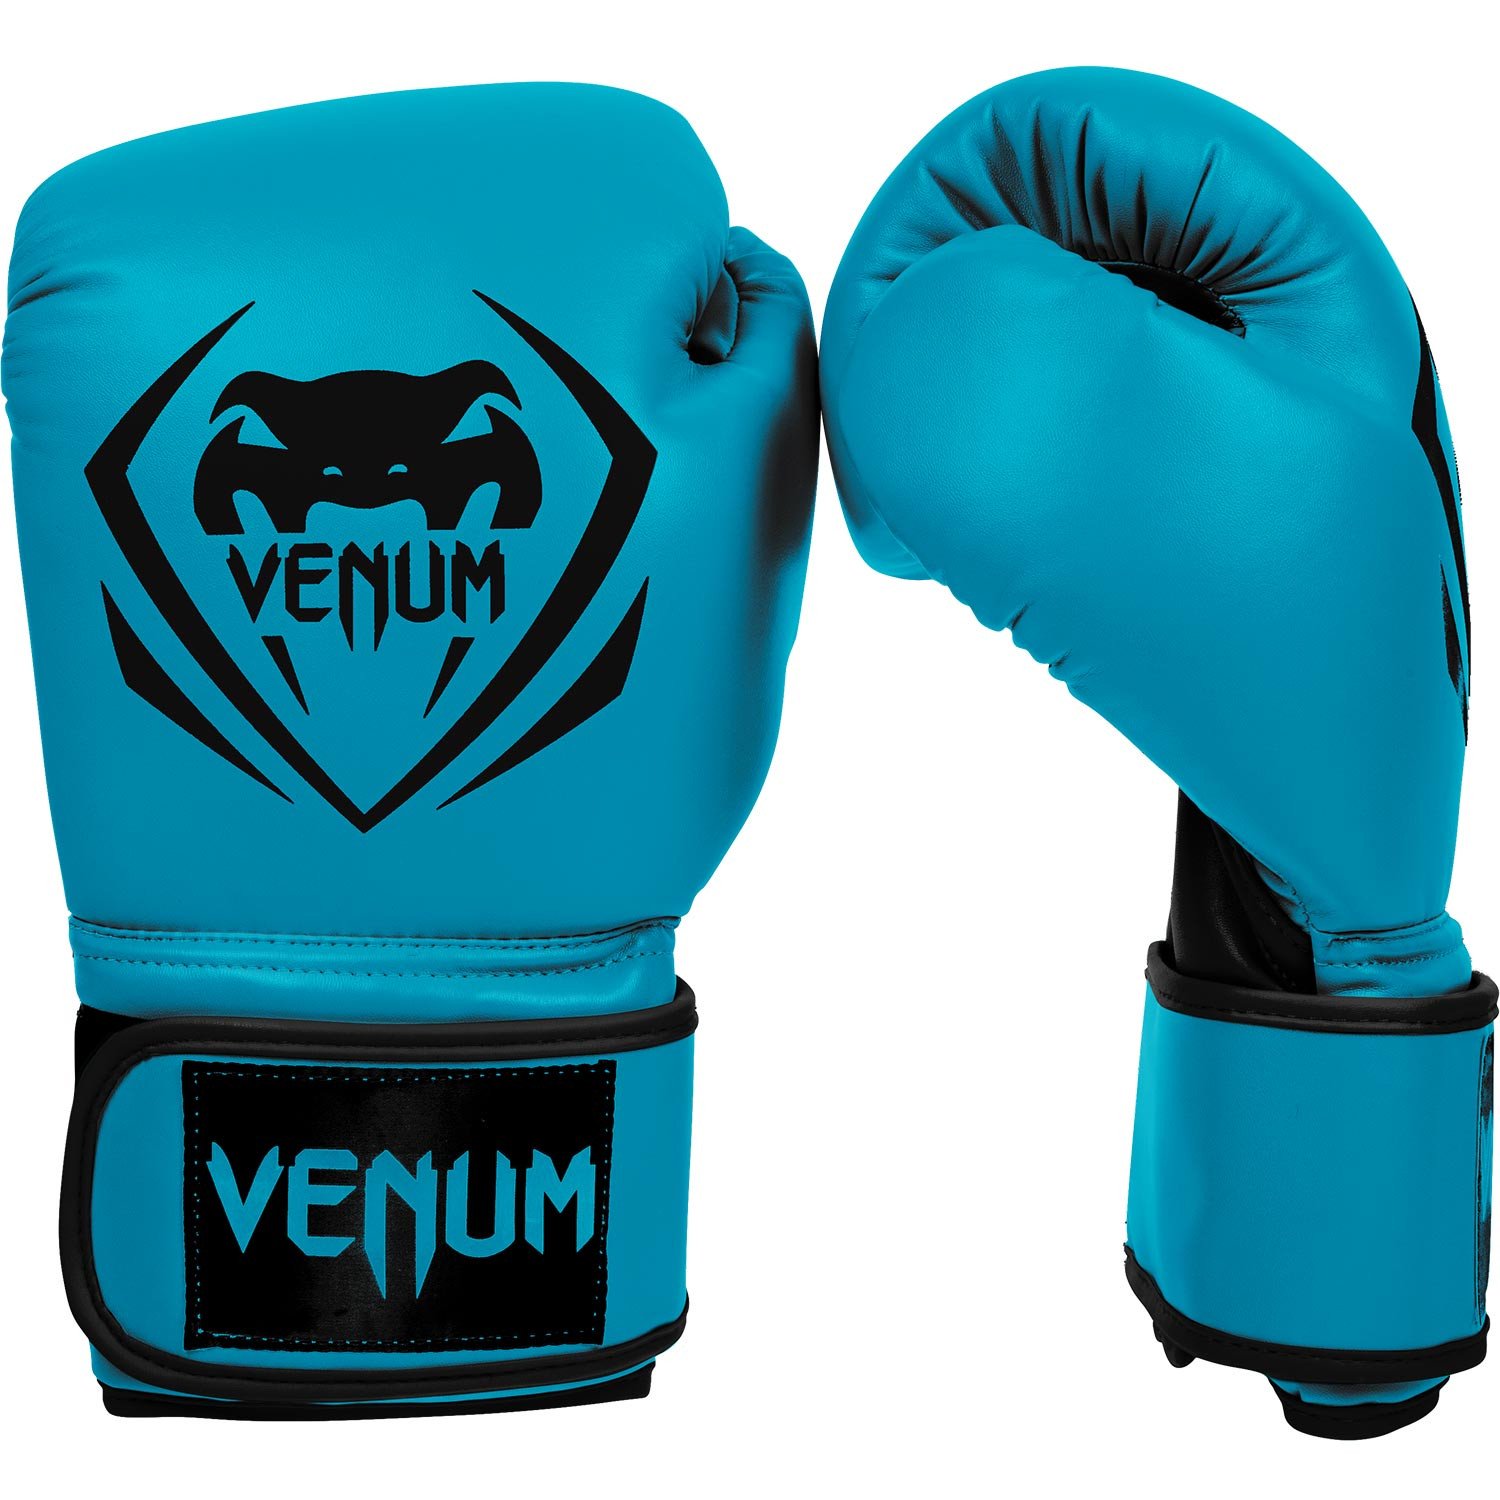 Gant de Boxe Venum en cuir de très bonne qualité shock absorption